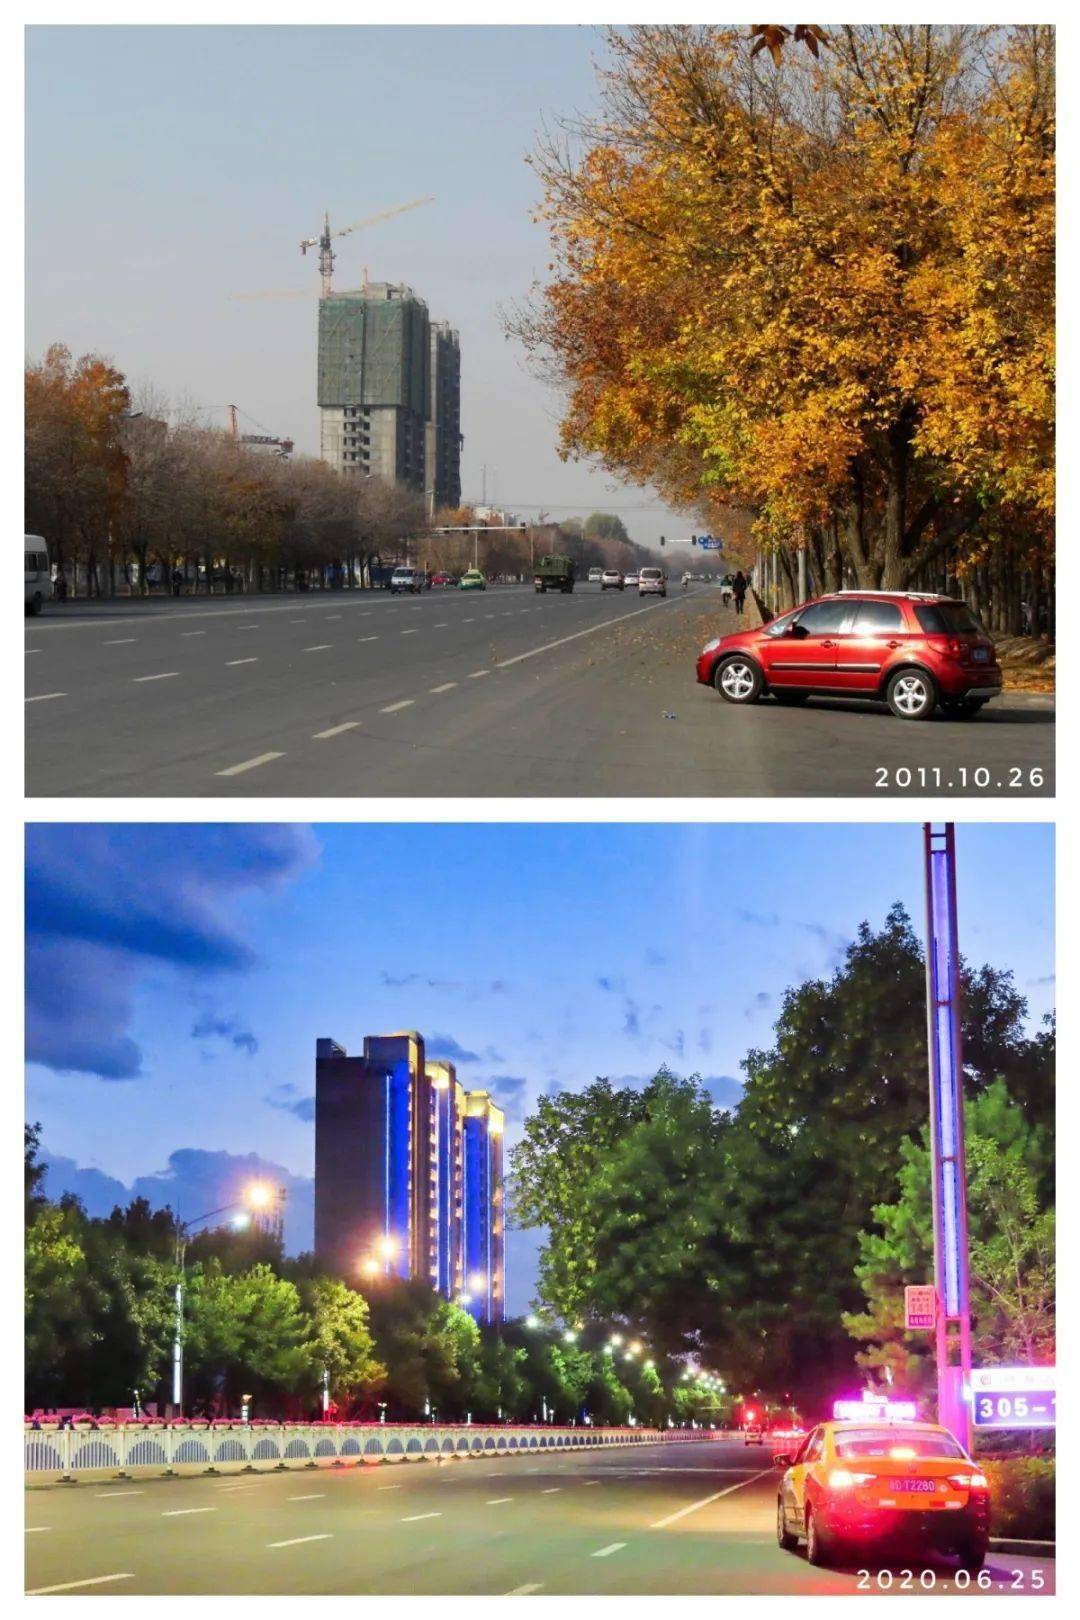 用一组新老照片 带你见证一座城的文明蝶变▼奎屯市乌鲁木齐西路路口